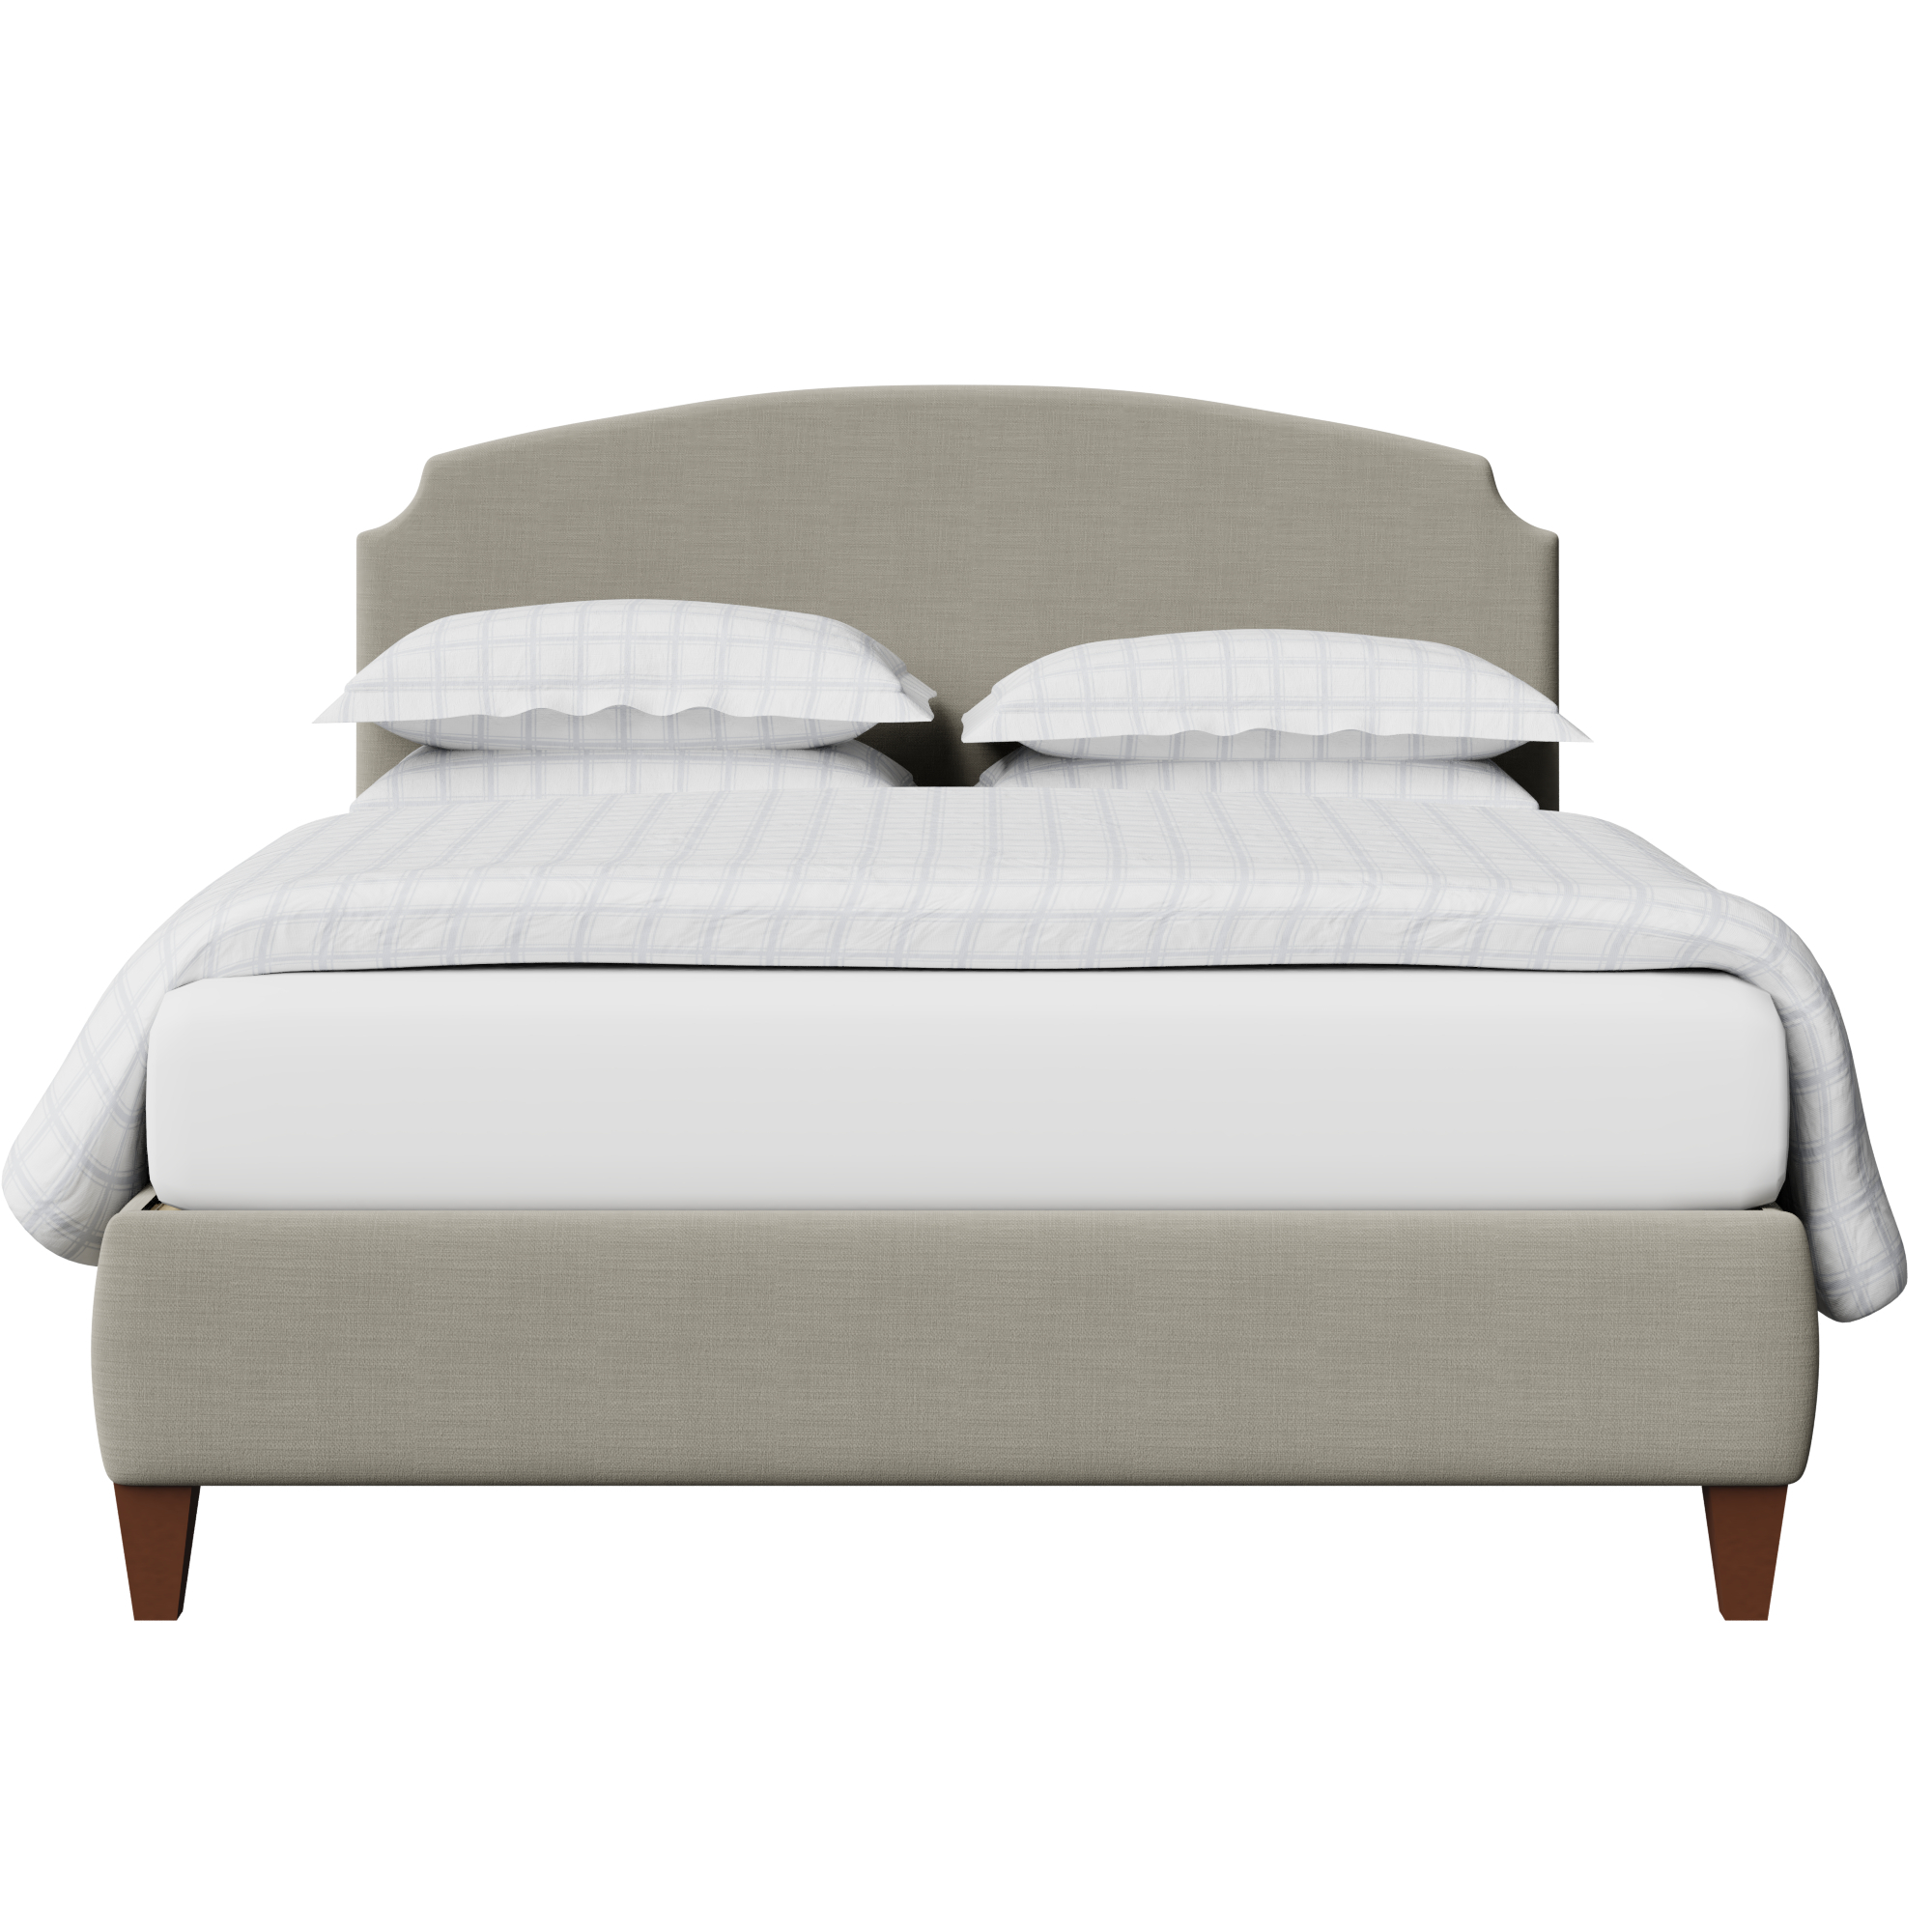 Lide Upholstered Bed Frame The, Grey Fabric Upholstered Bed Frame